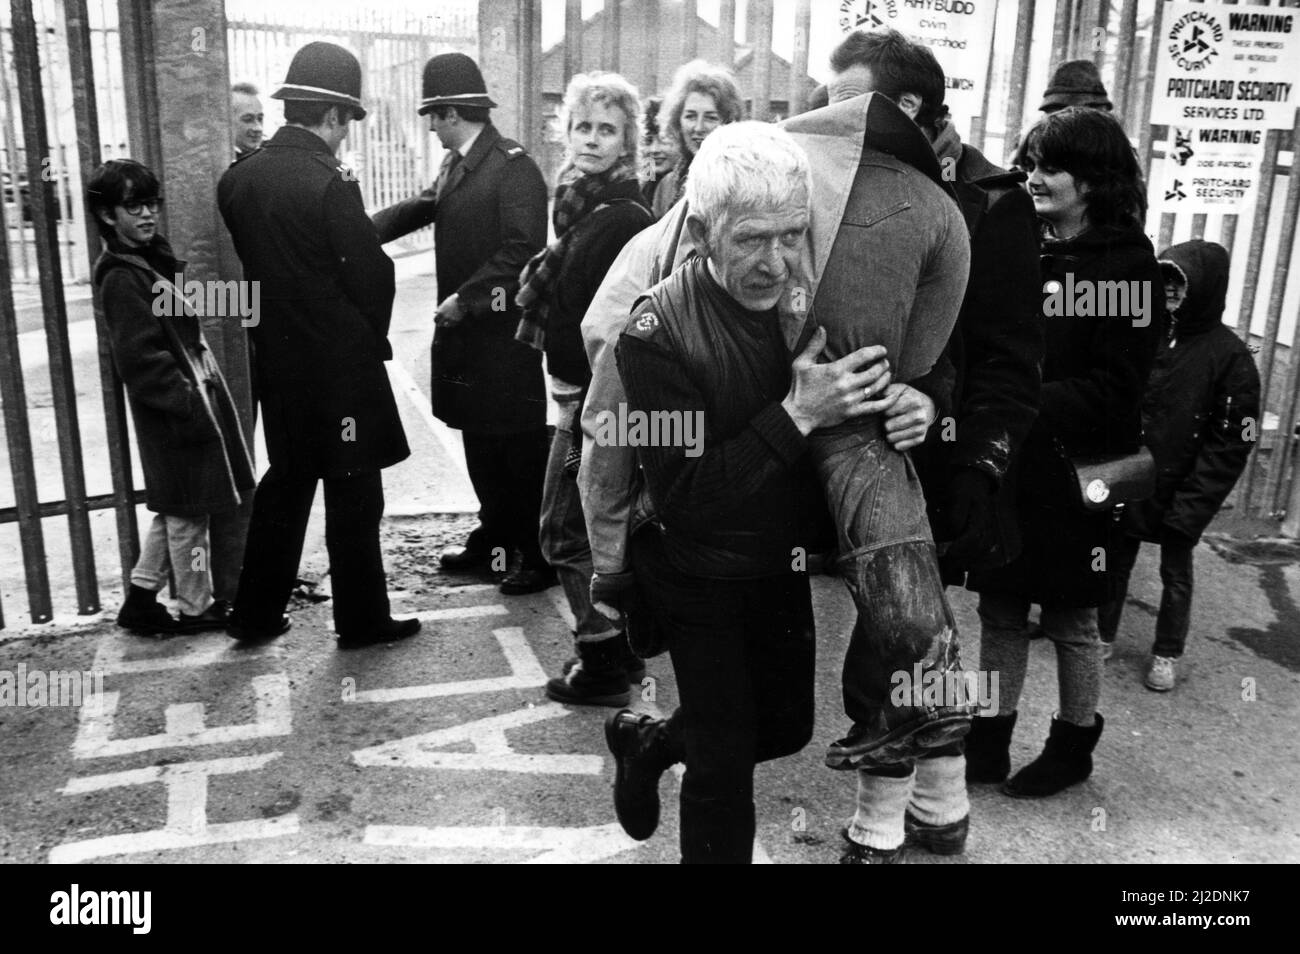 Les forces de sécurité lèvent l'un des manifestants pour la paix et les retirent du conseil lors des manifestations des bunkers nucléaires de Carmarthen. Janvier 1986. Banque D'Images